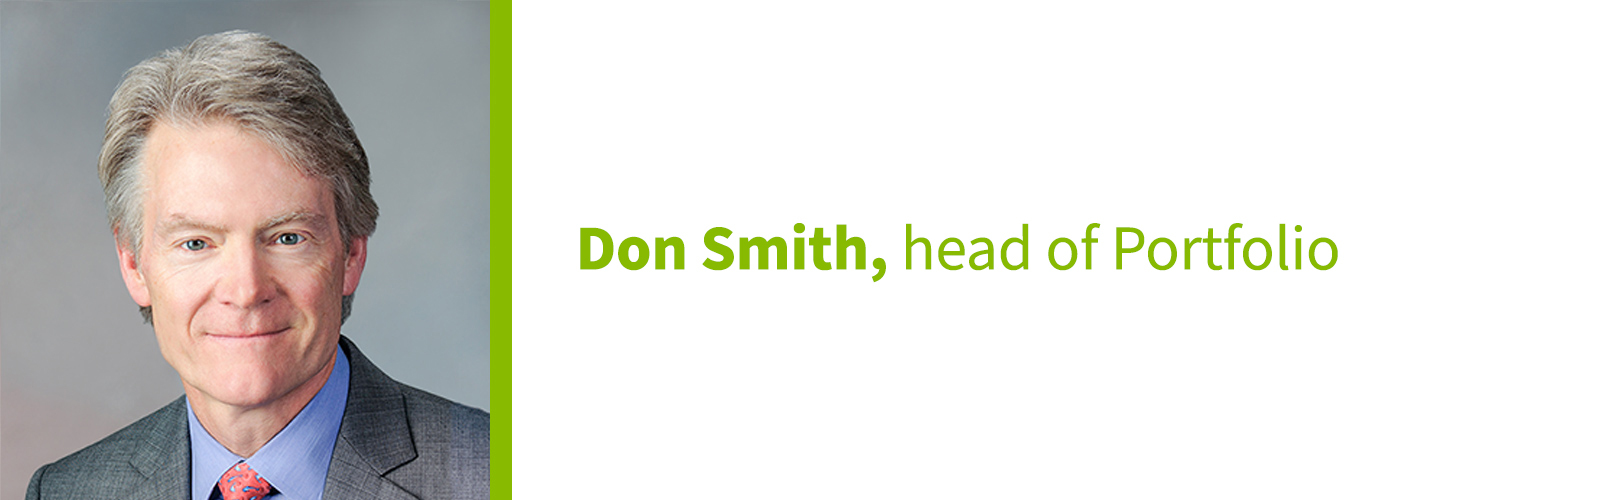 Don Smith, head of Portfolio